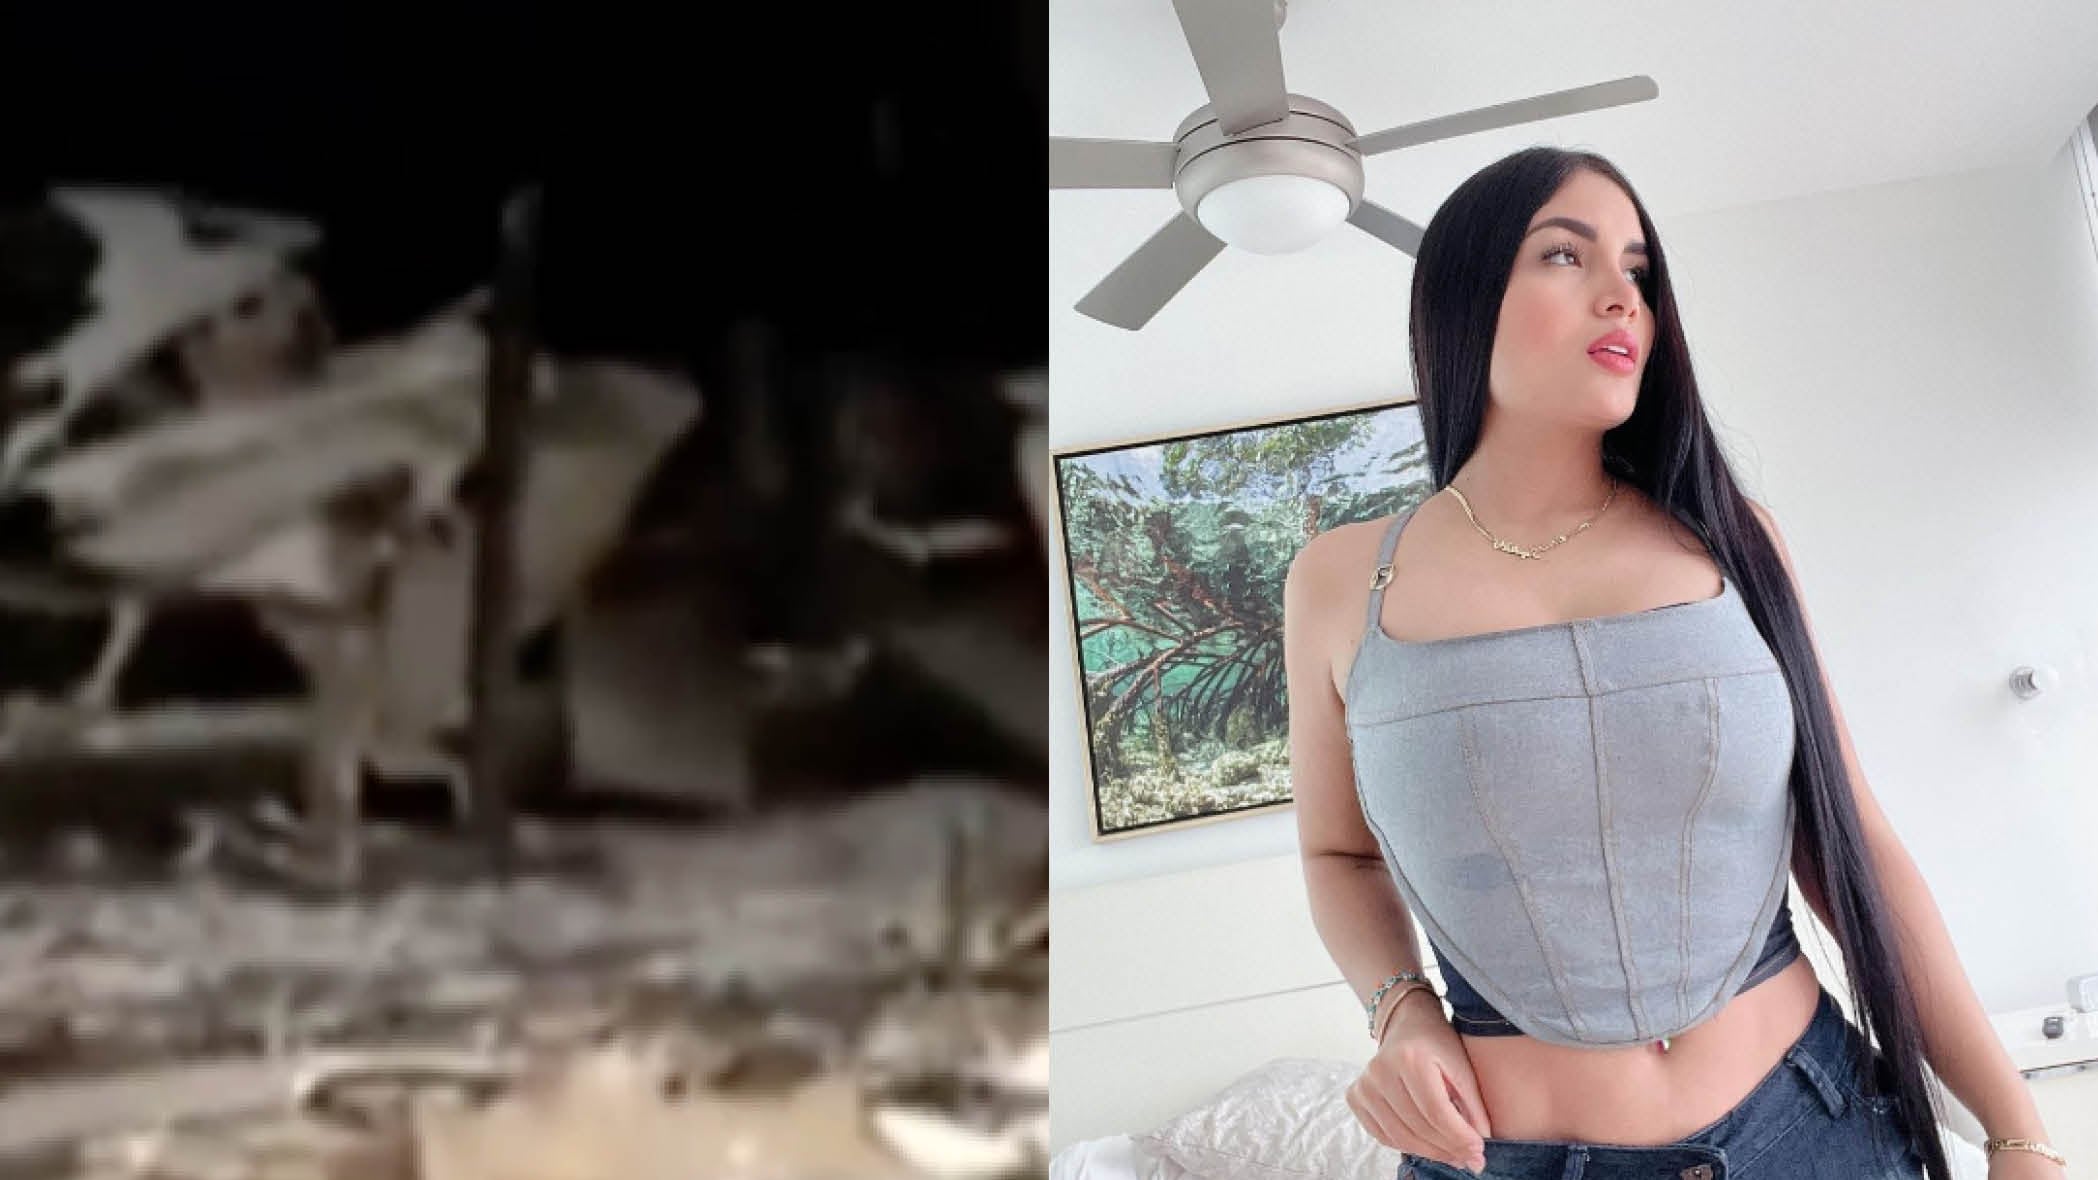 Discoteca de modelo y artista ecuatoriana sufrió de nuevo atentado luego de tres semanas.